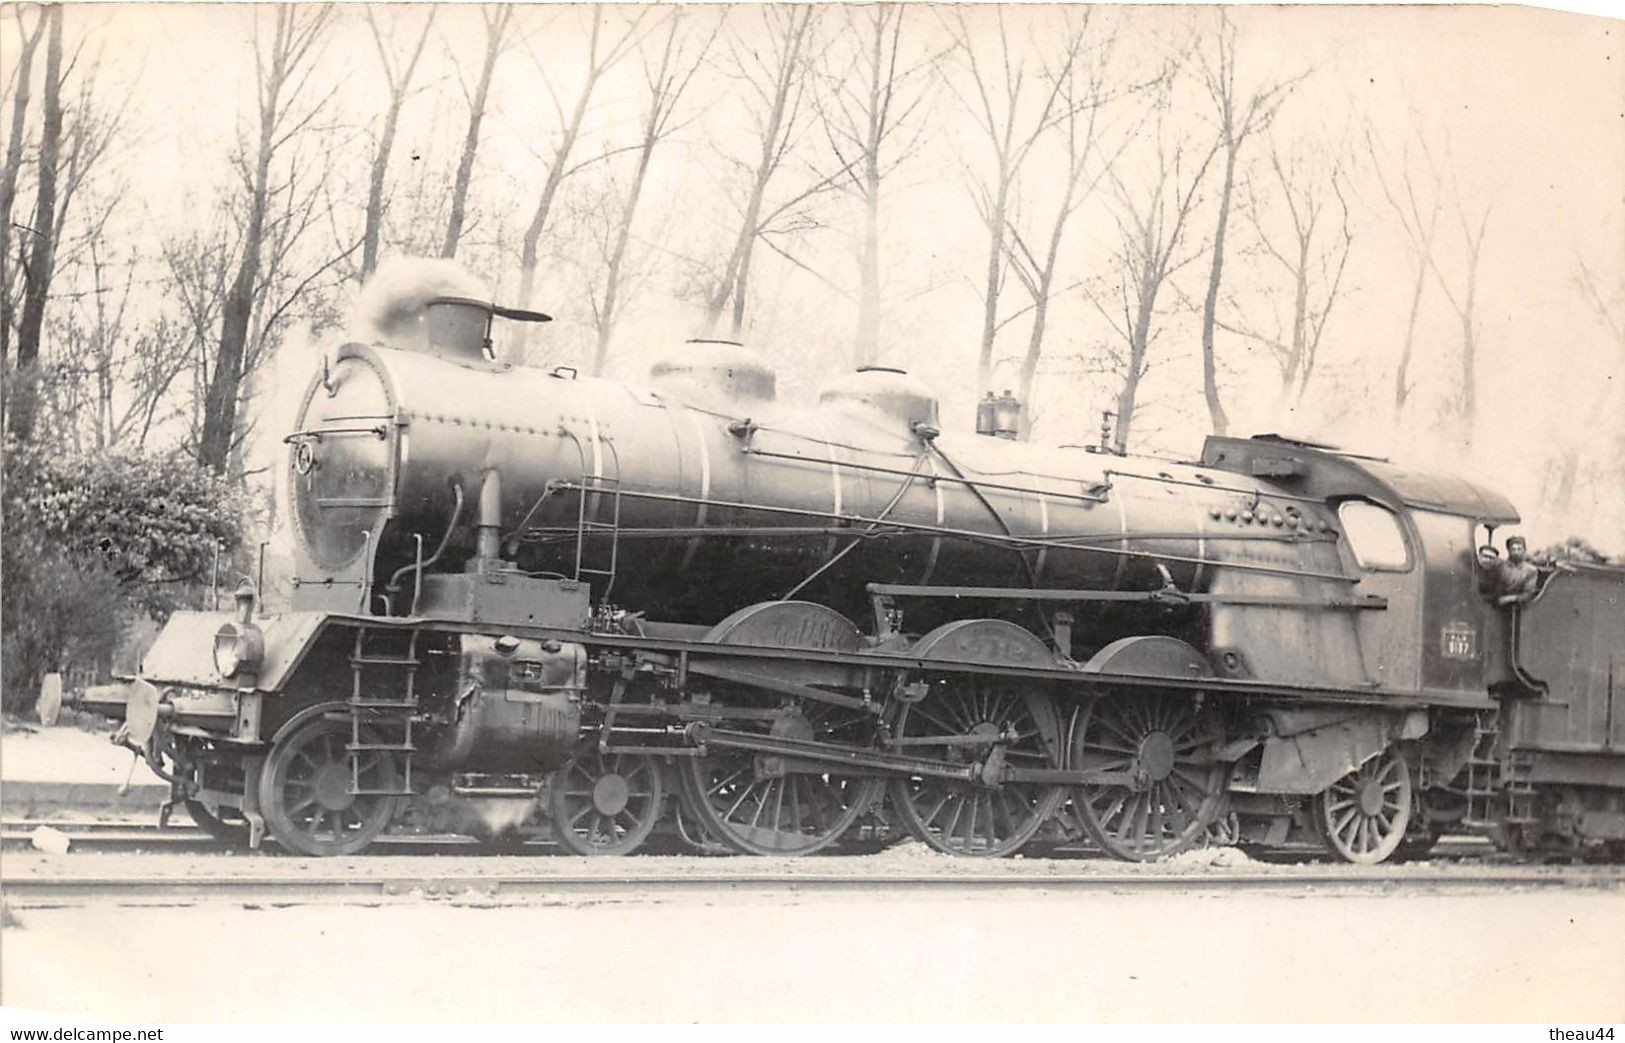 ¤¤   -  Carte-Photo D'une Locomotive Ancienne   -  Chemin De Fer Du P.L.M.  -  Cheminots      -  ¤¤ - Matériel